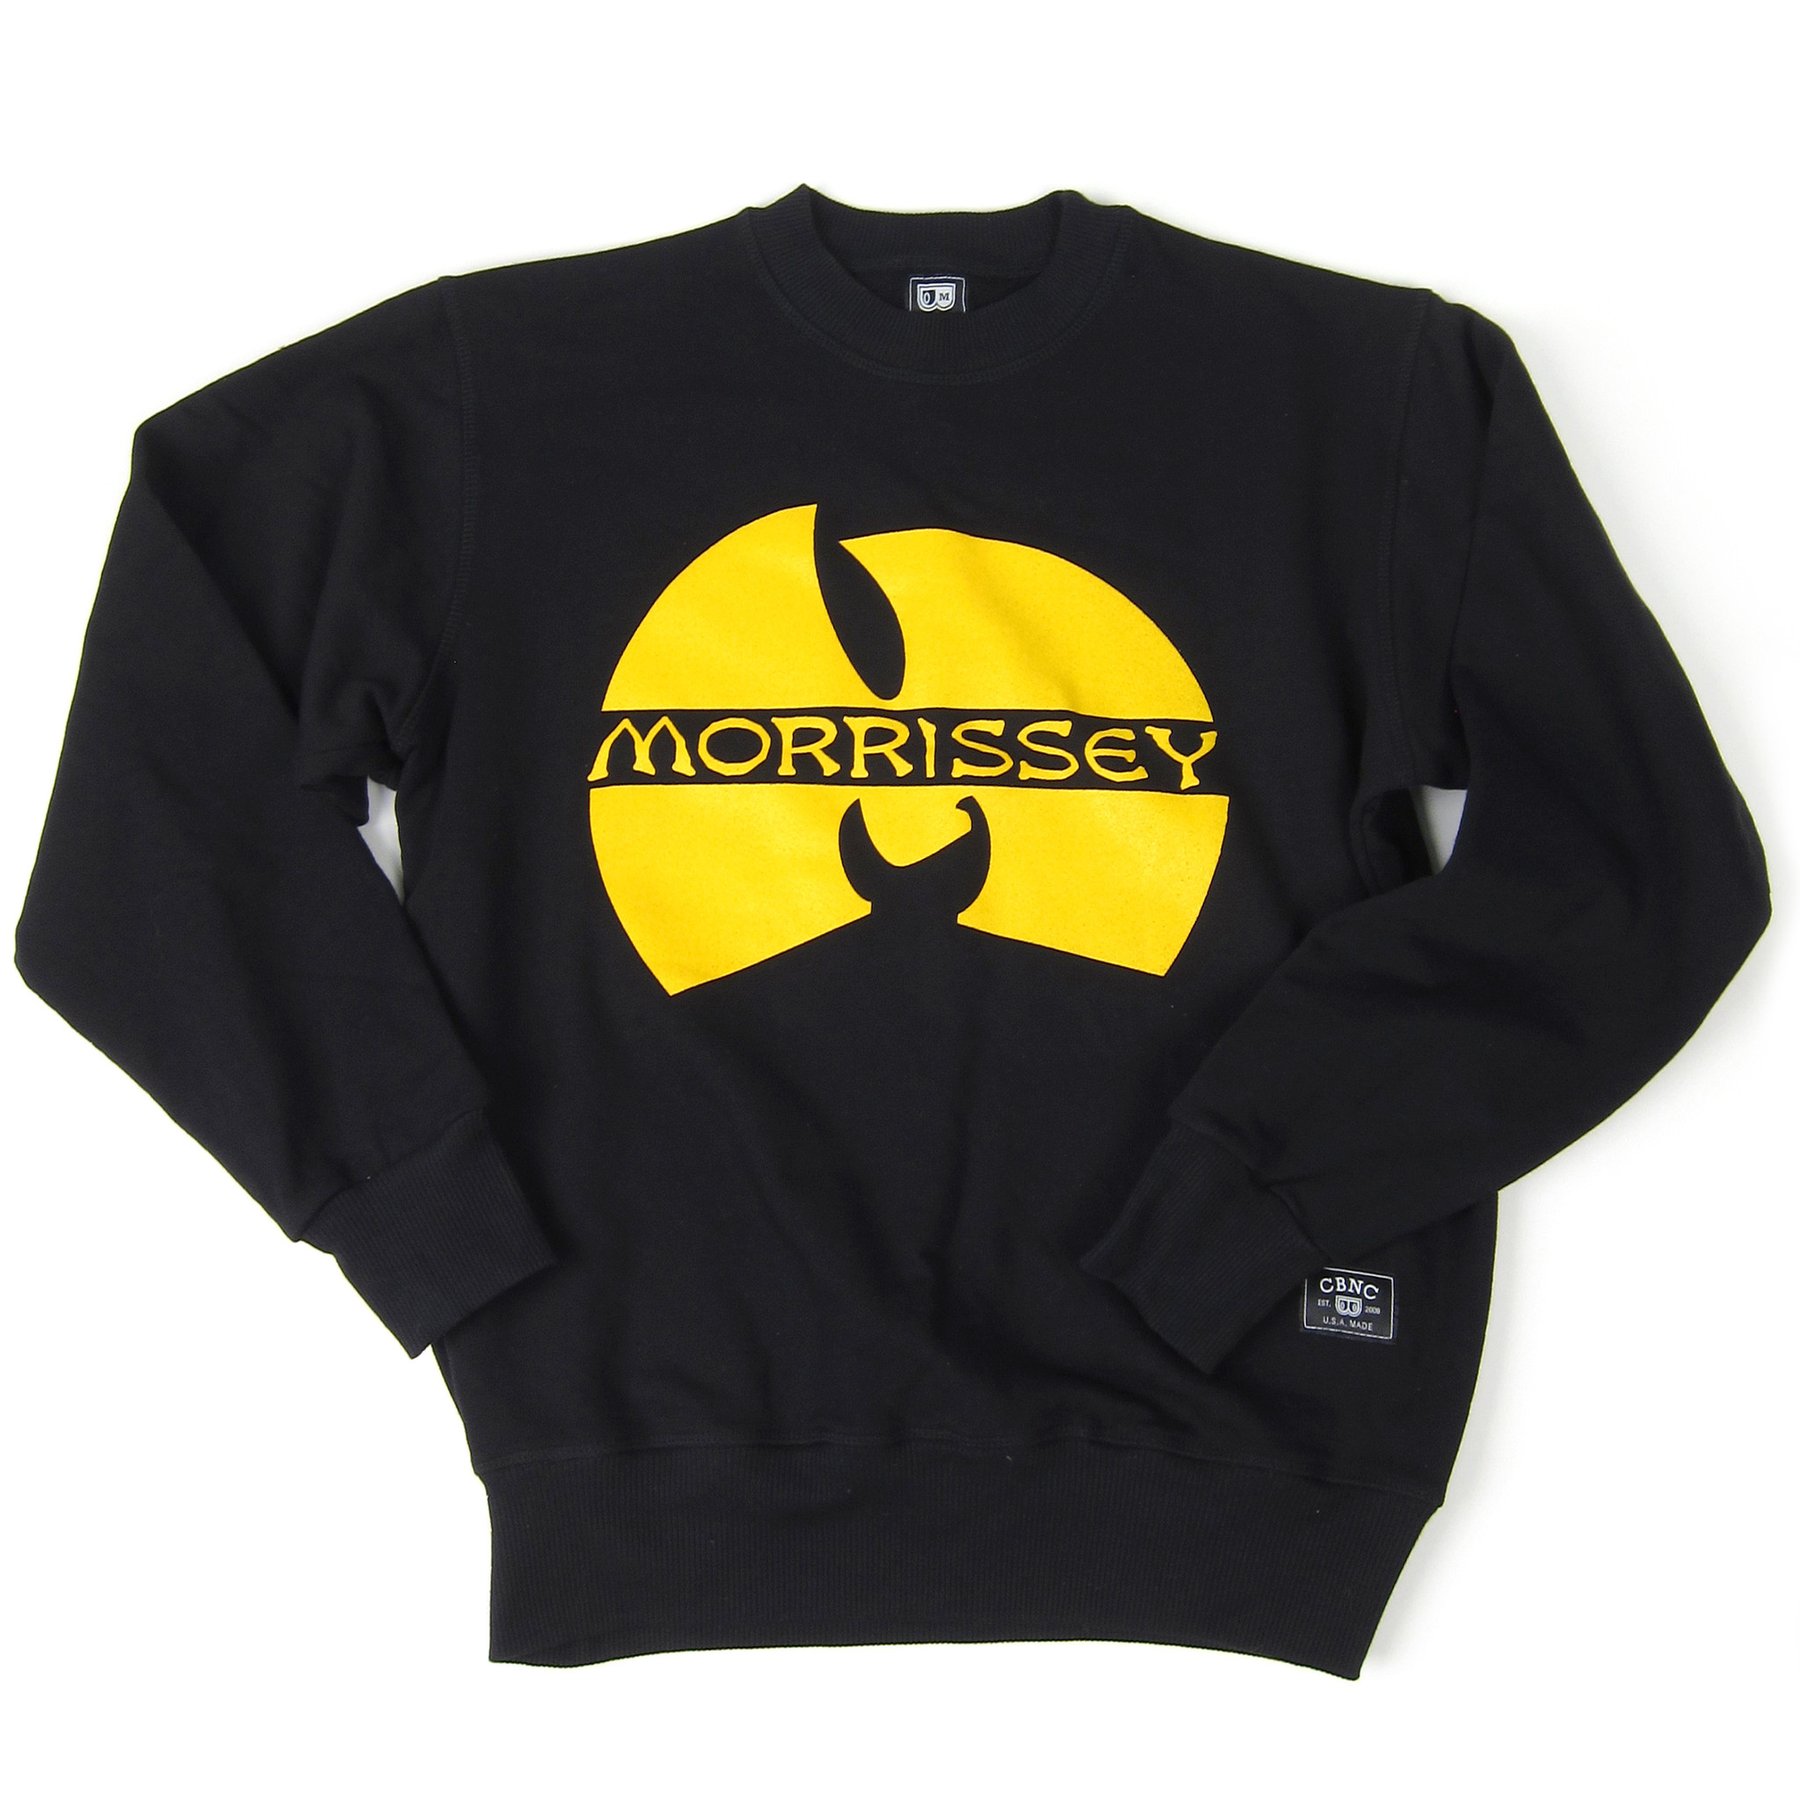 Wu-morrisey-sweatshirt_1800x